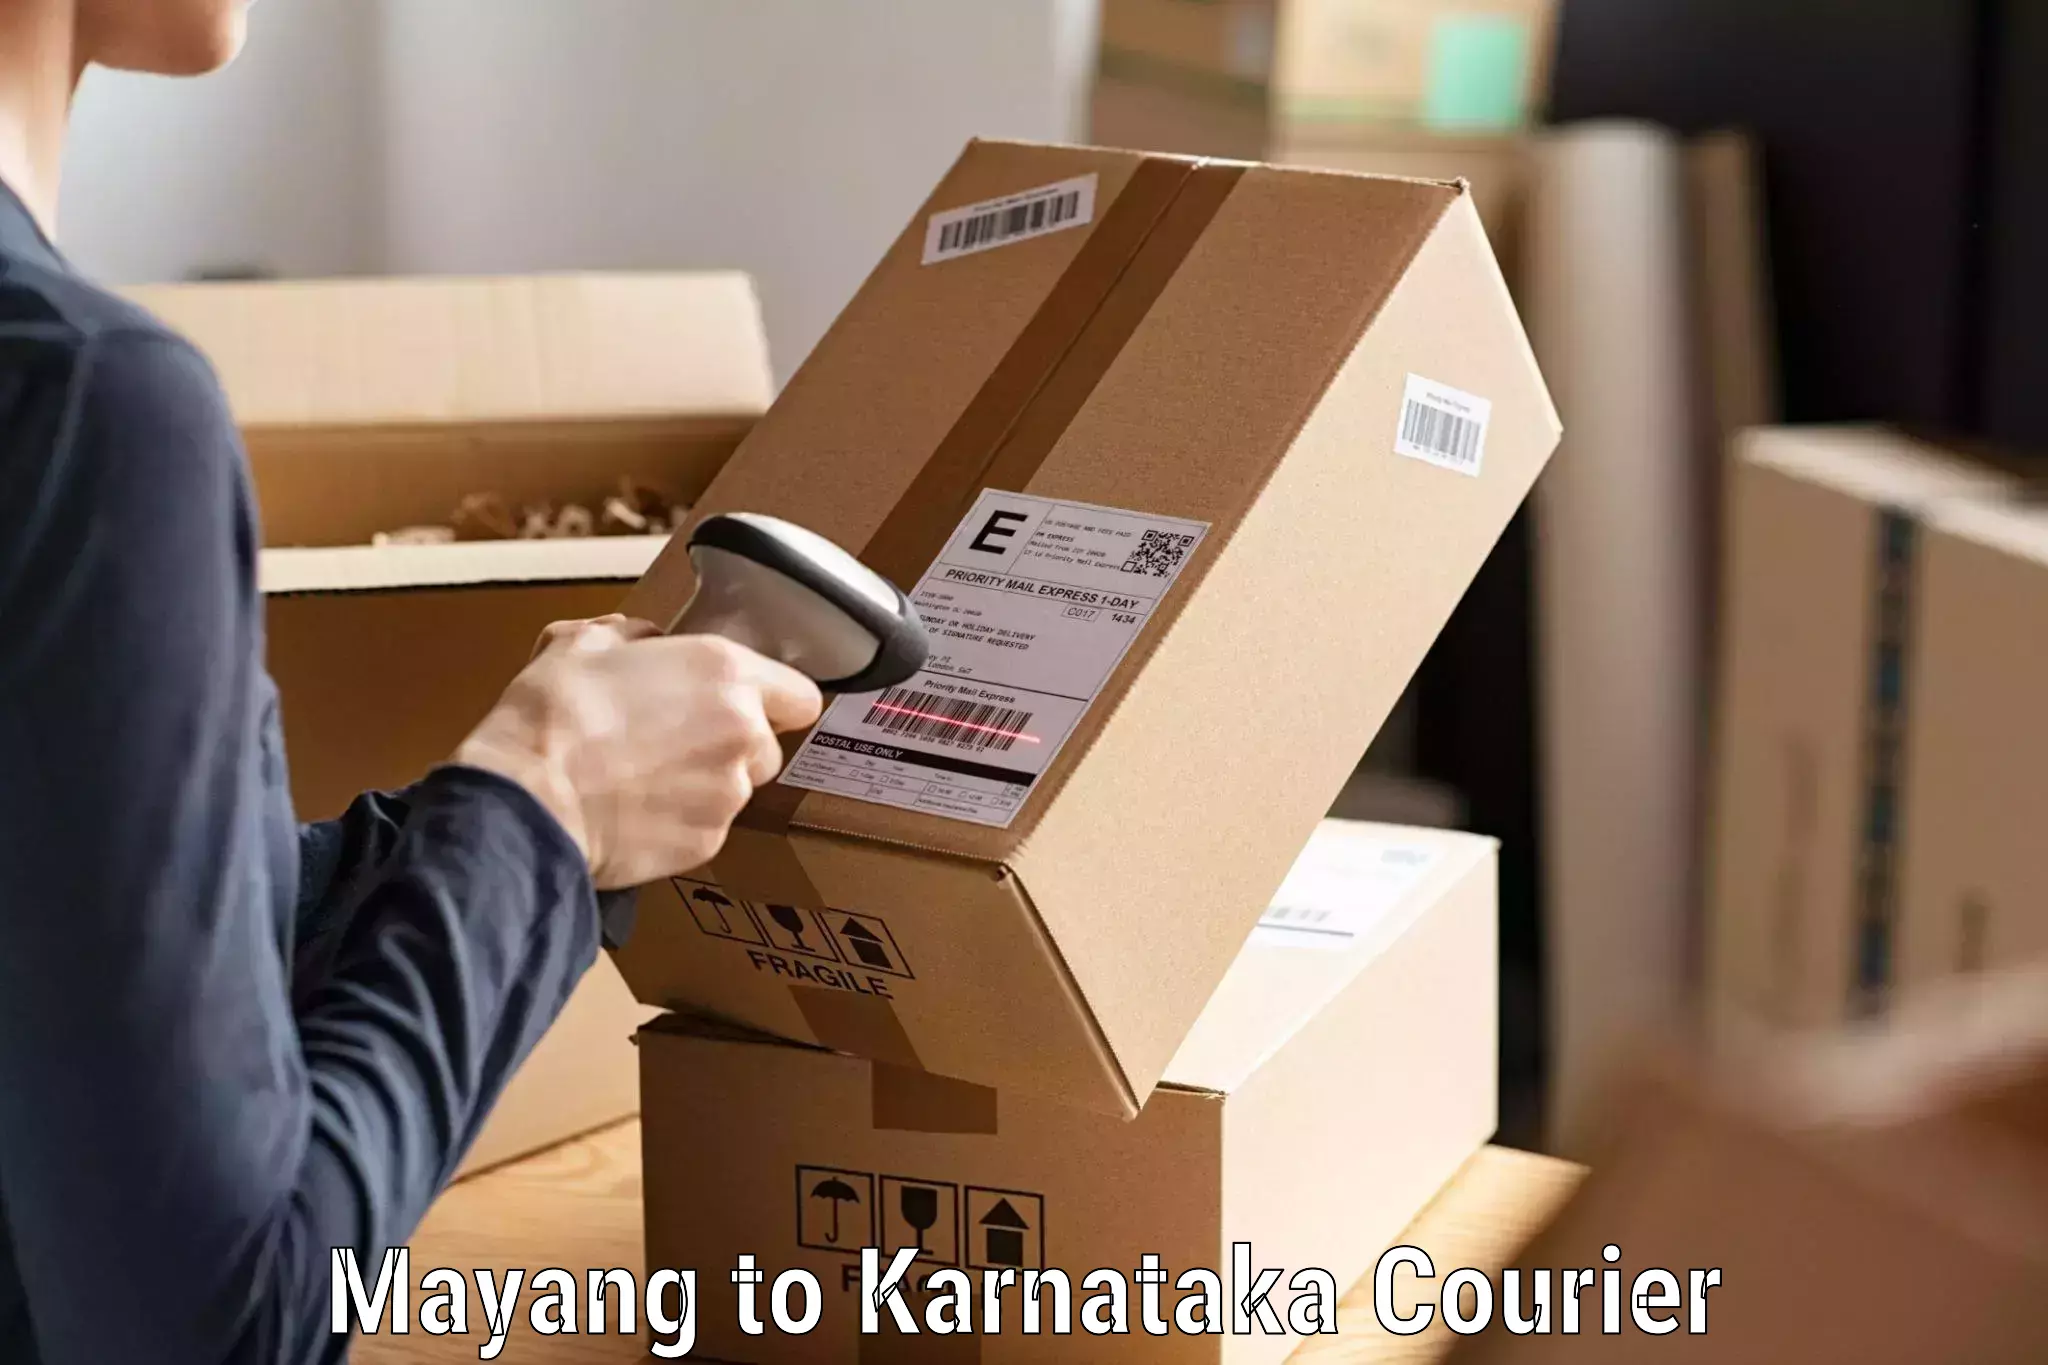 Seamless shipping experience Mayang to Karnataka